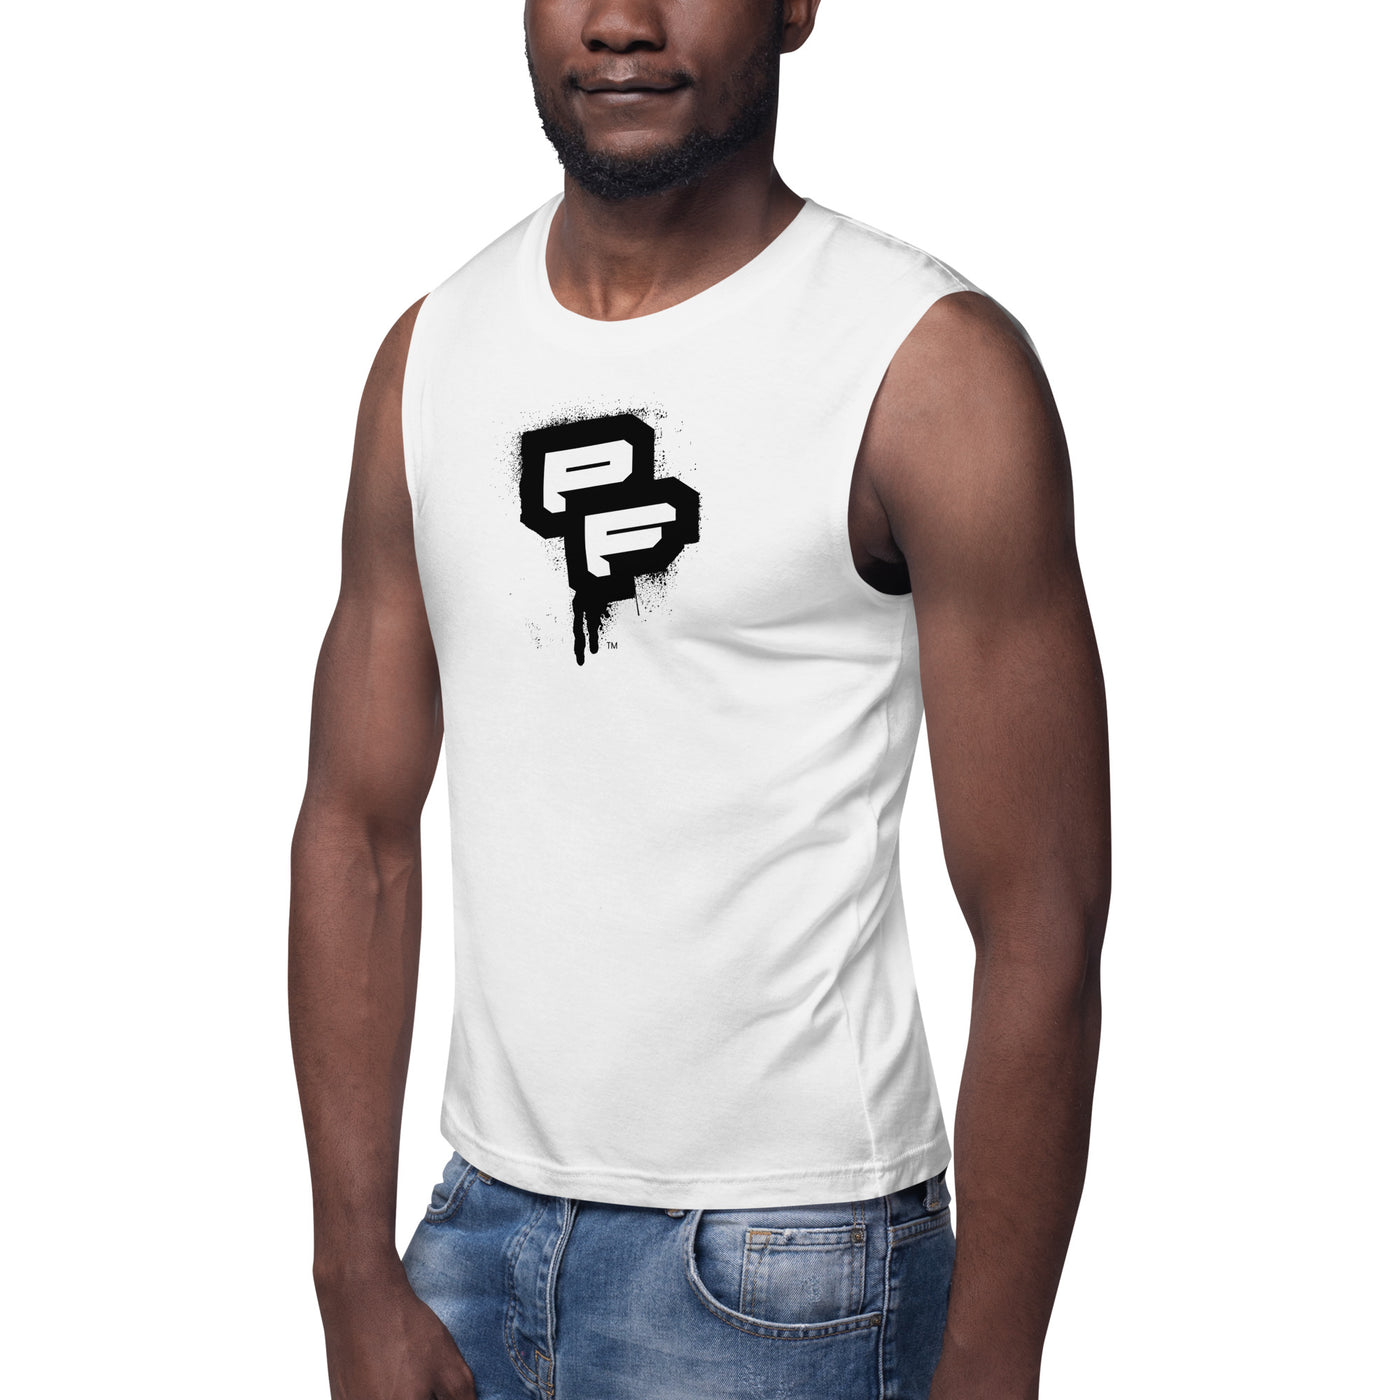 PF White Muscle Shirt